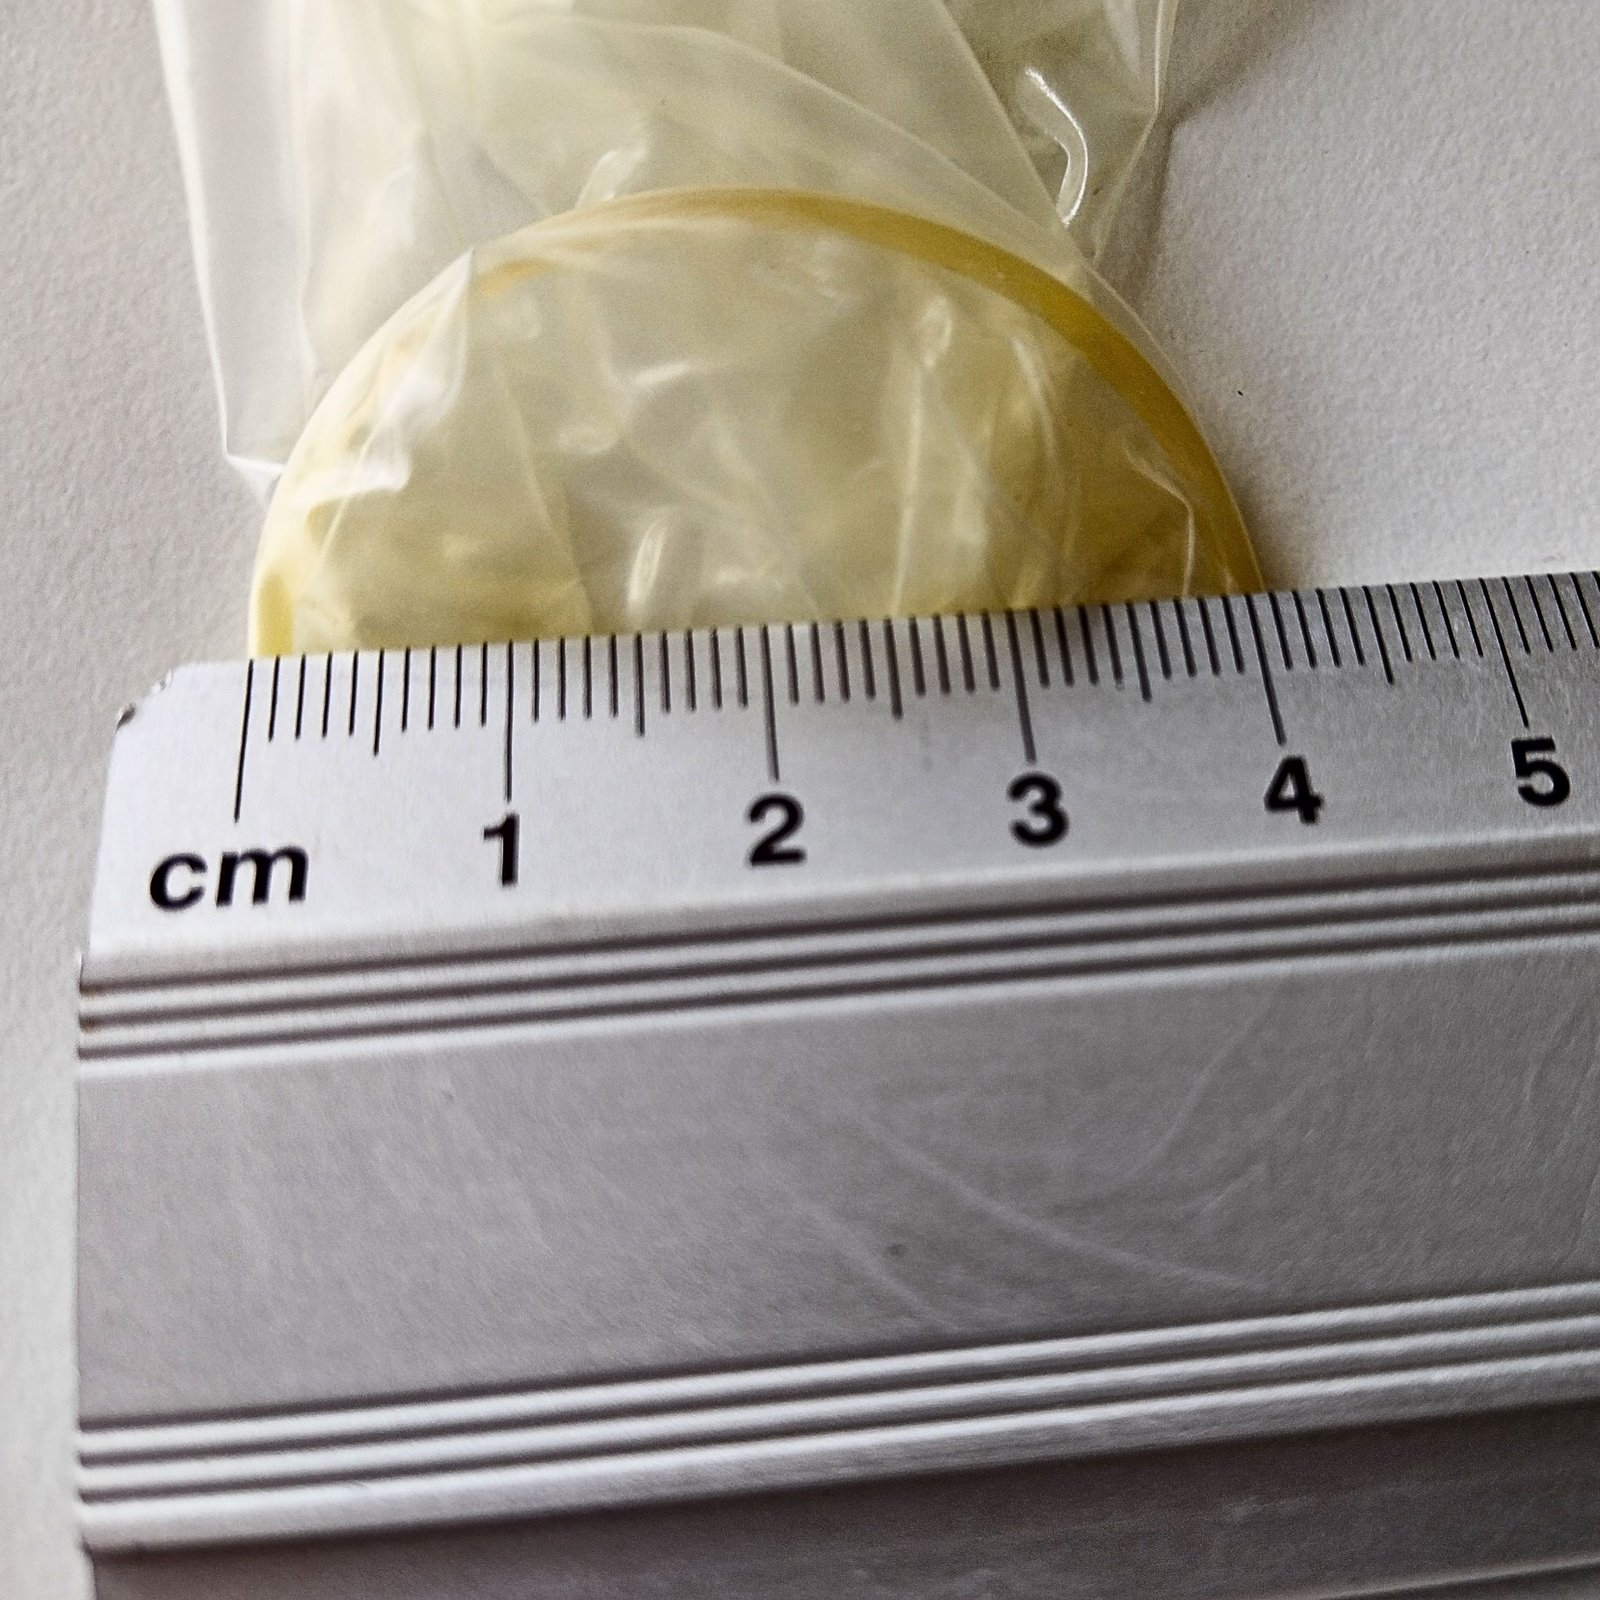 Mätning av diametern på en kondom